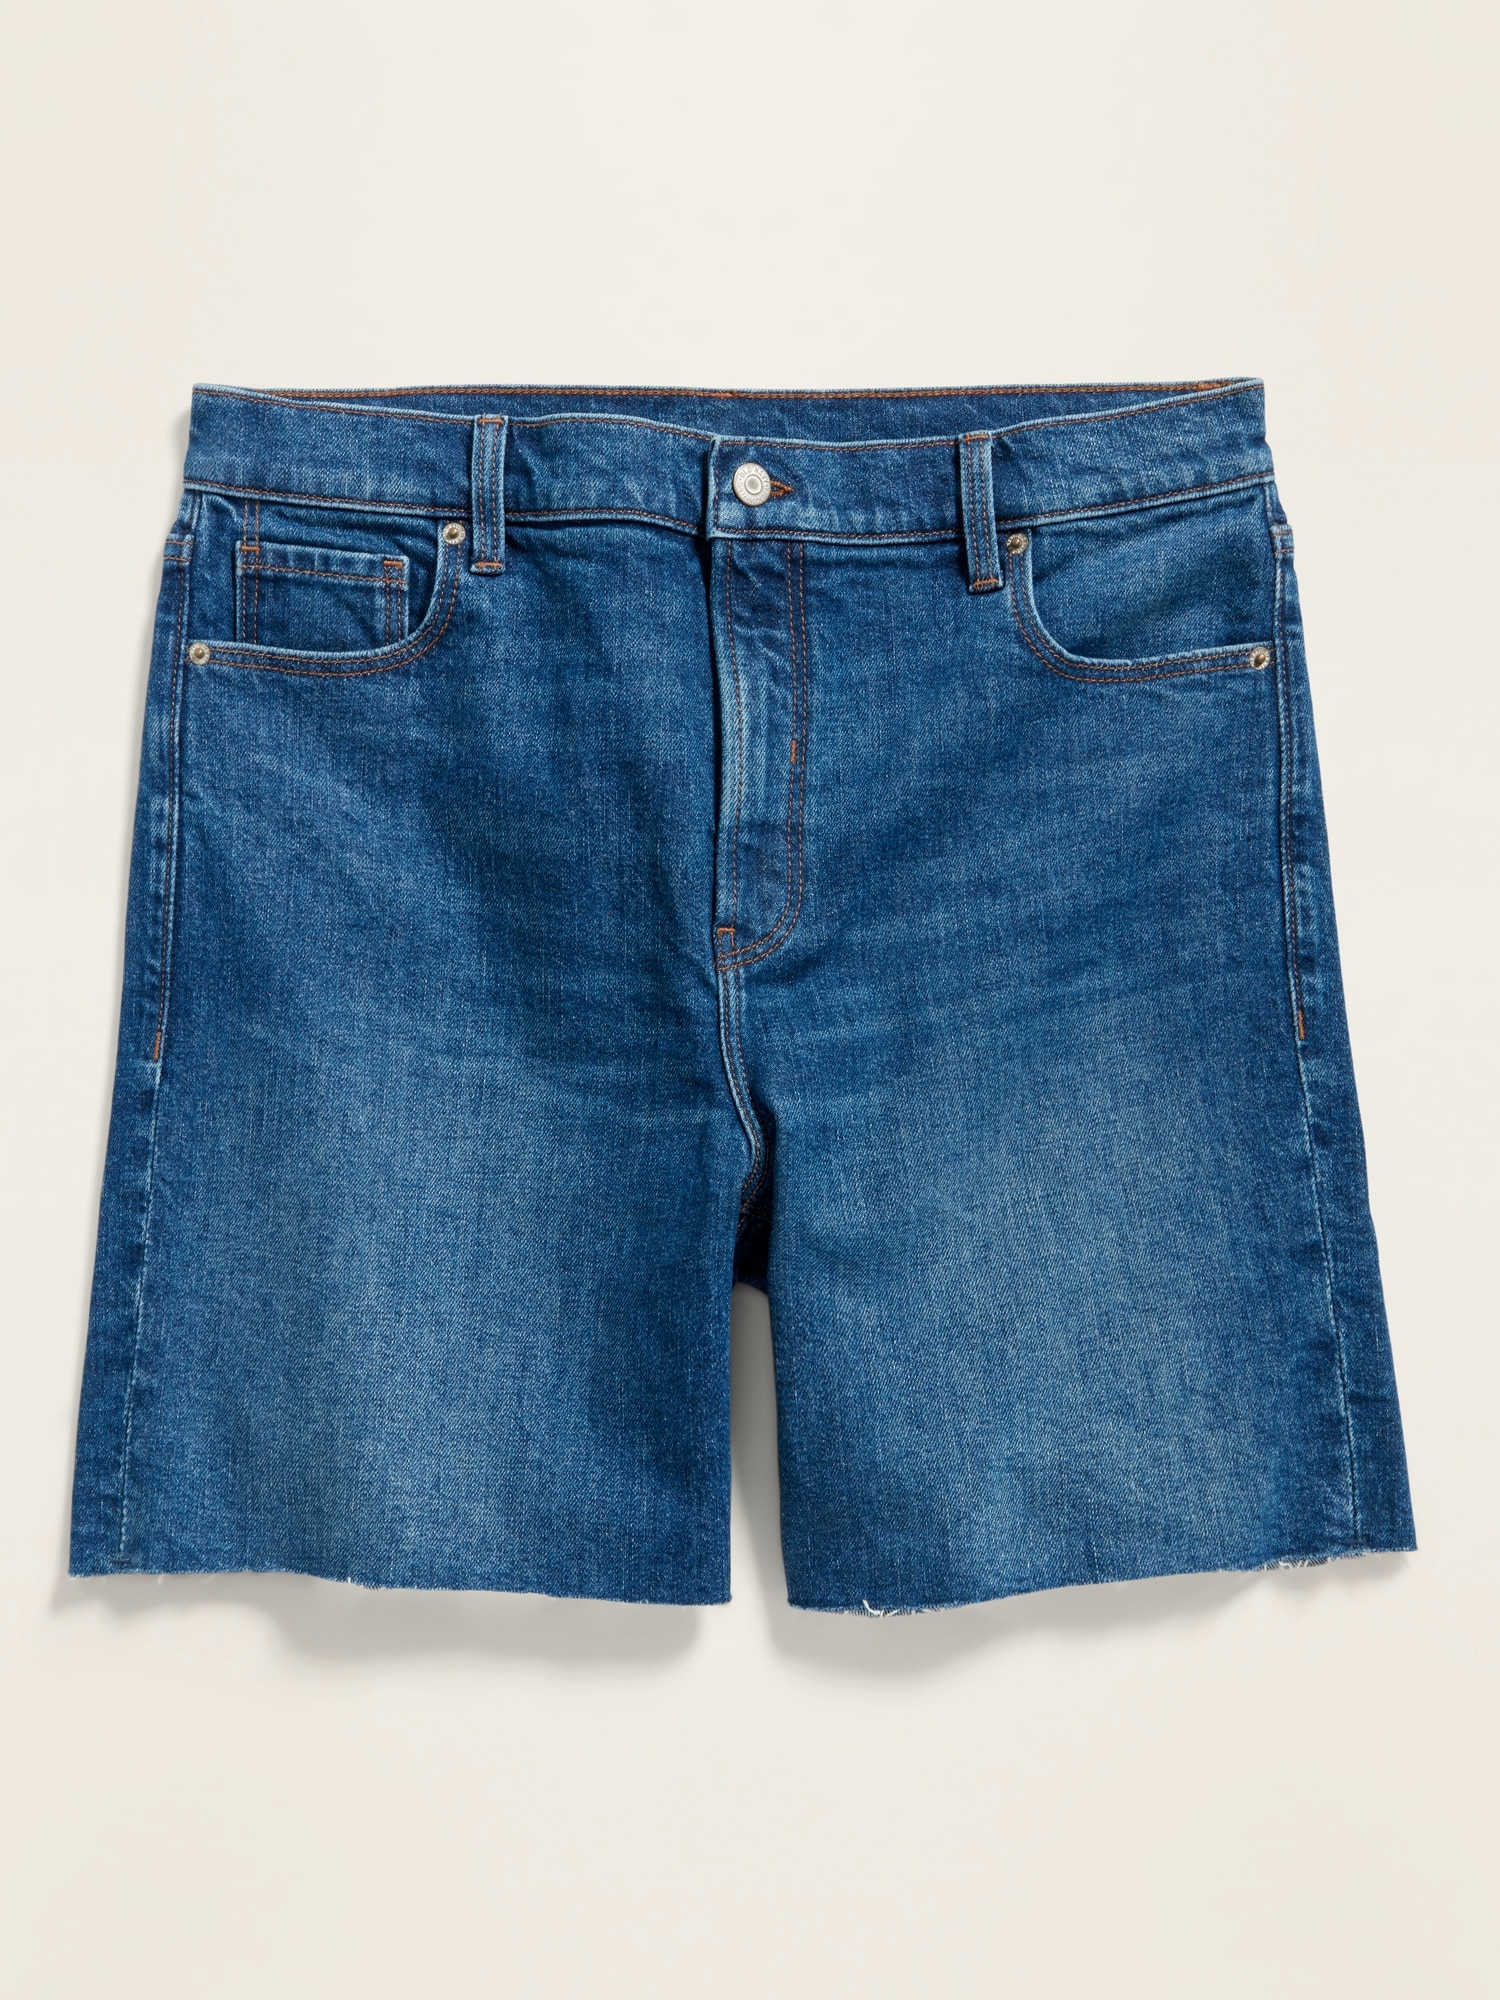 denim blue jean shorts